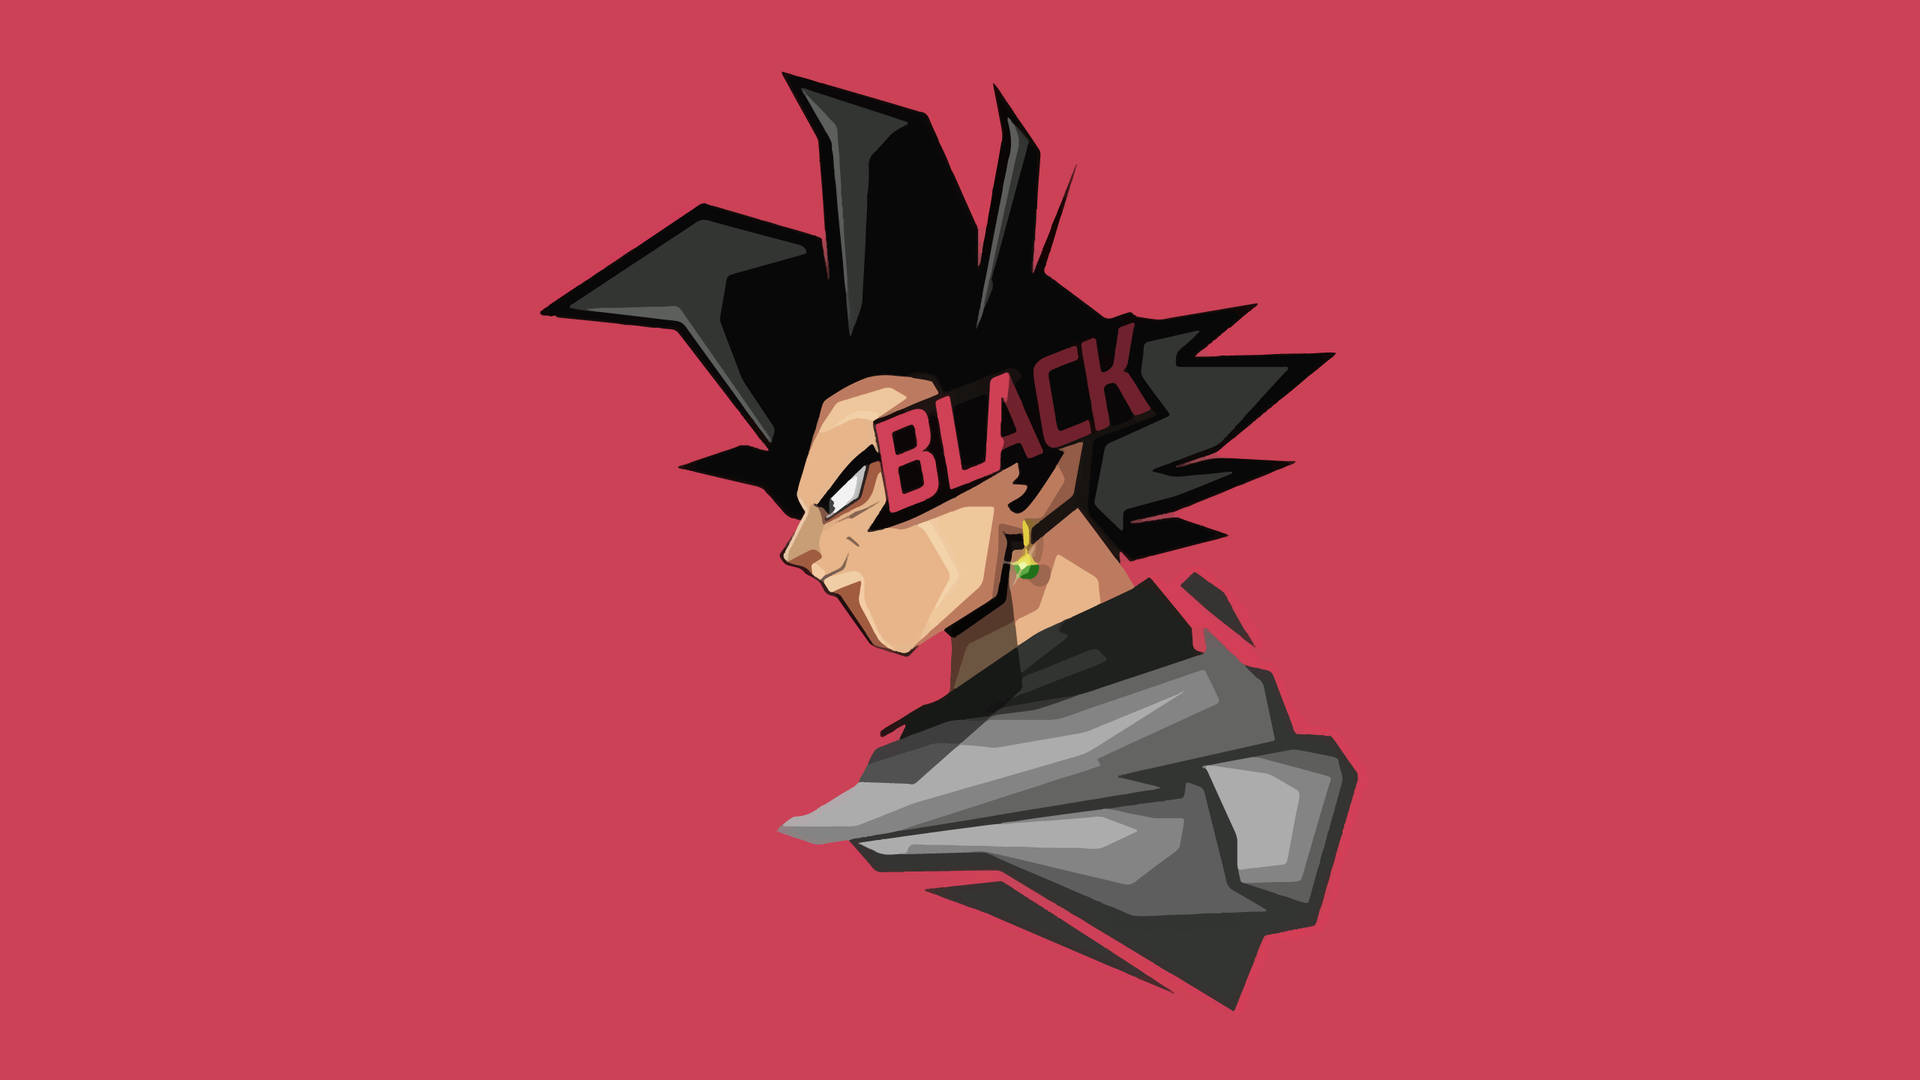 Black Goku Vector Art